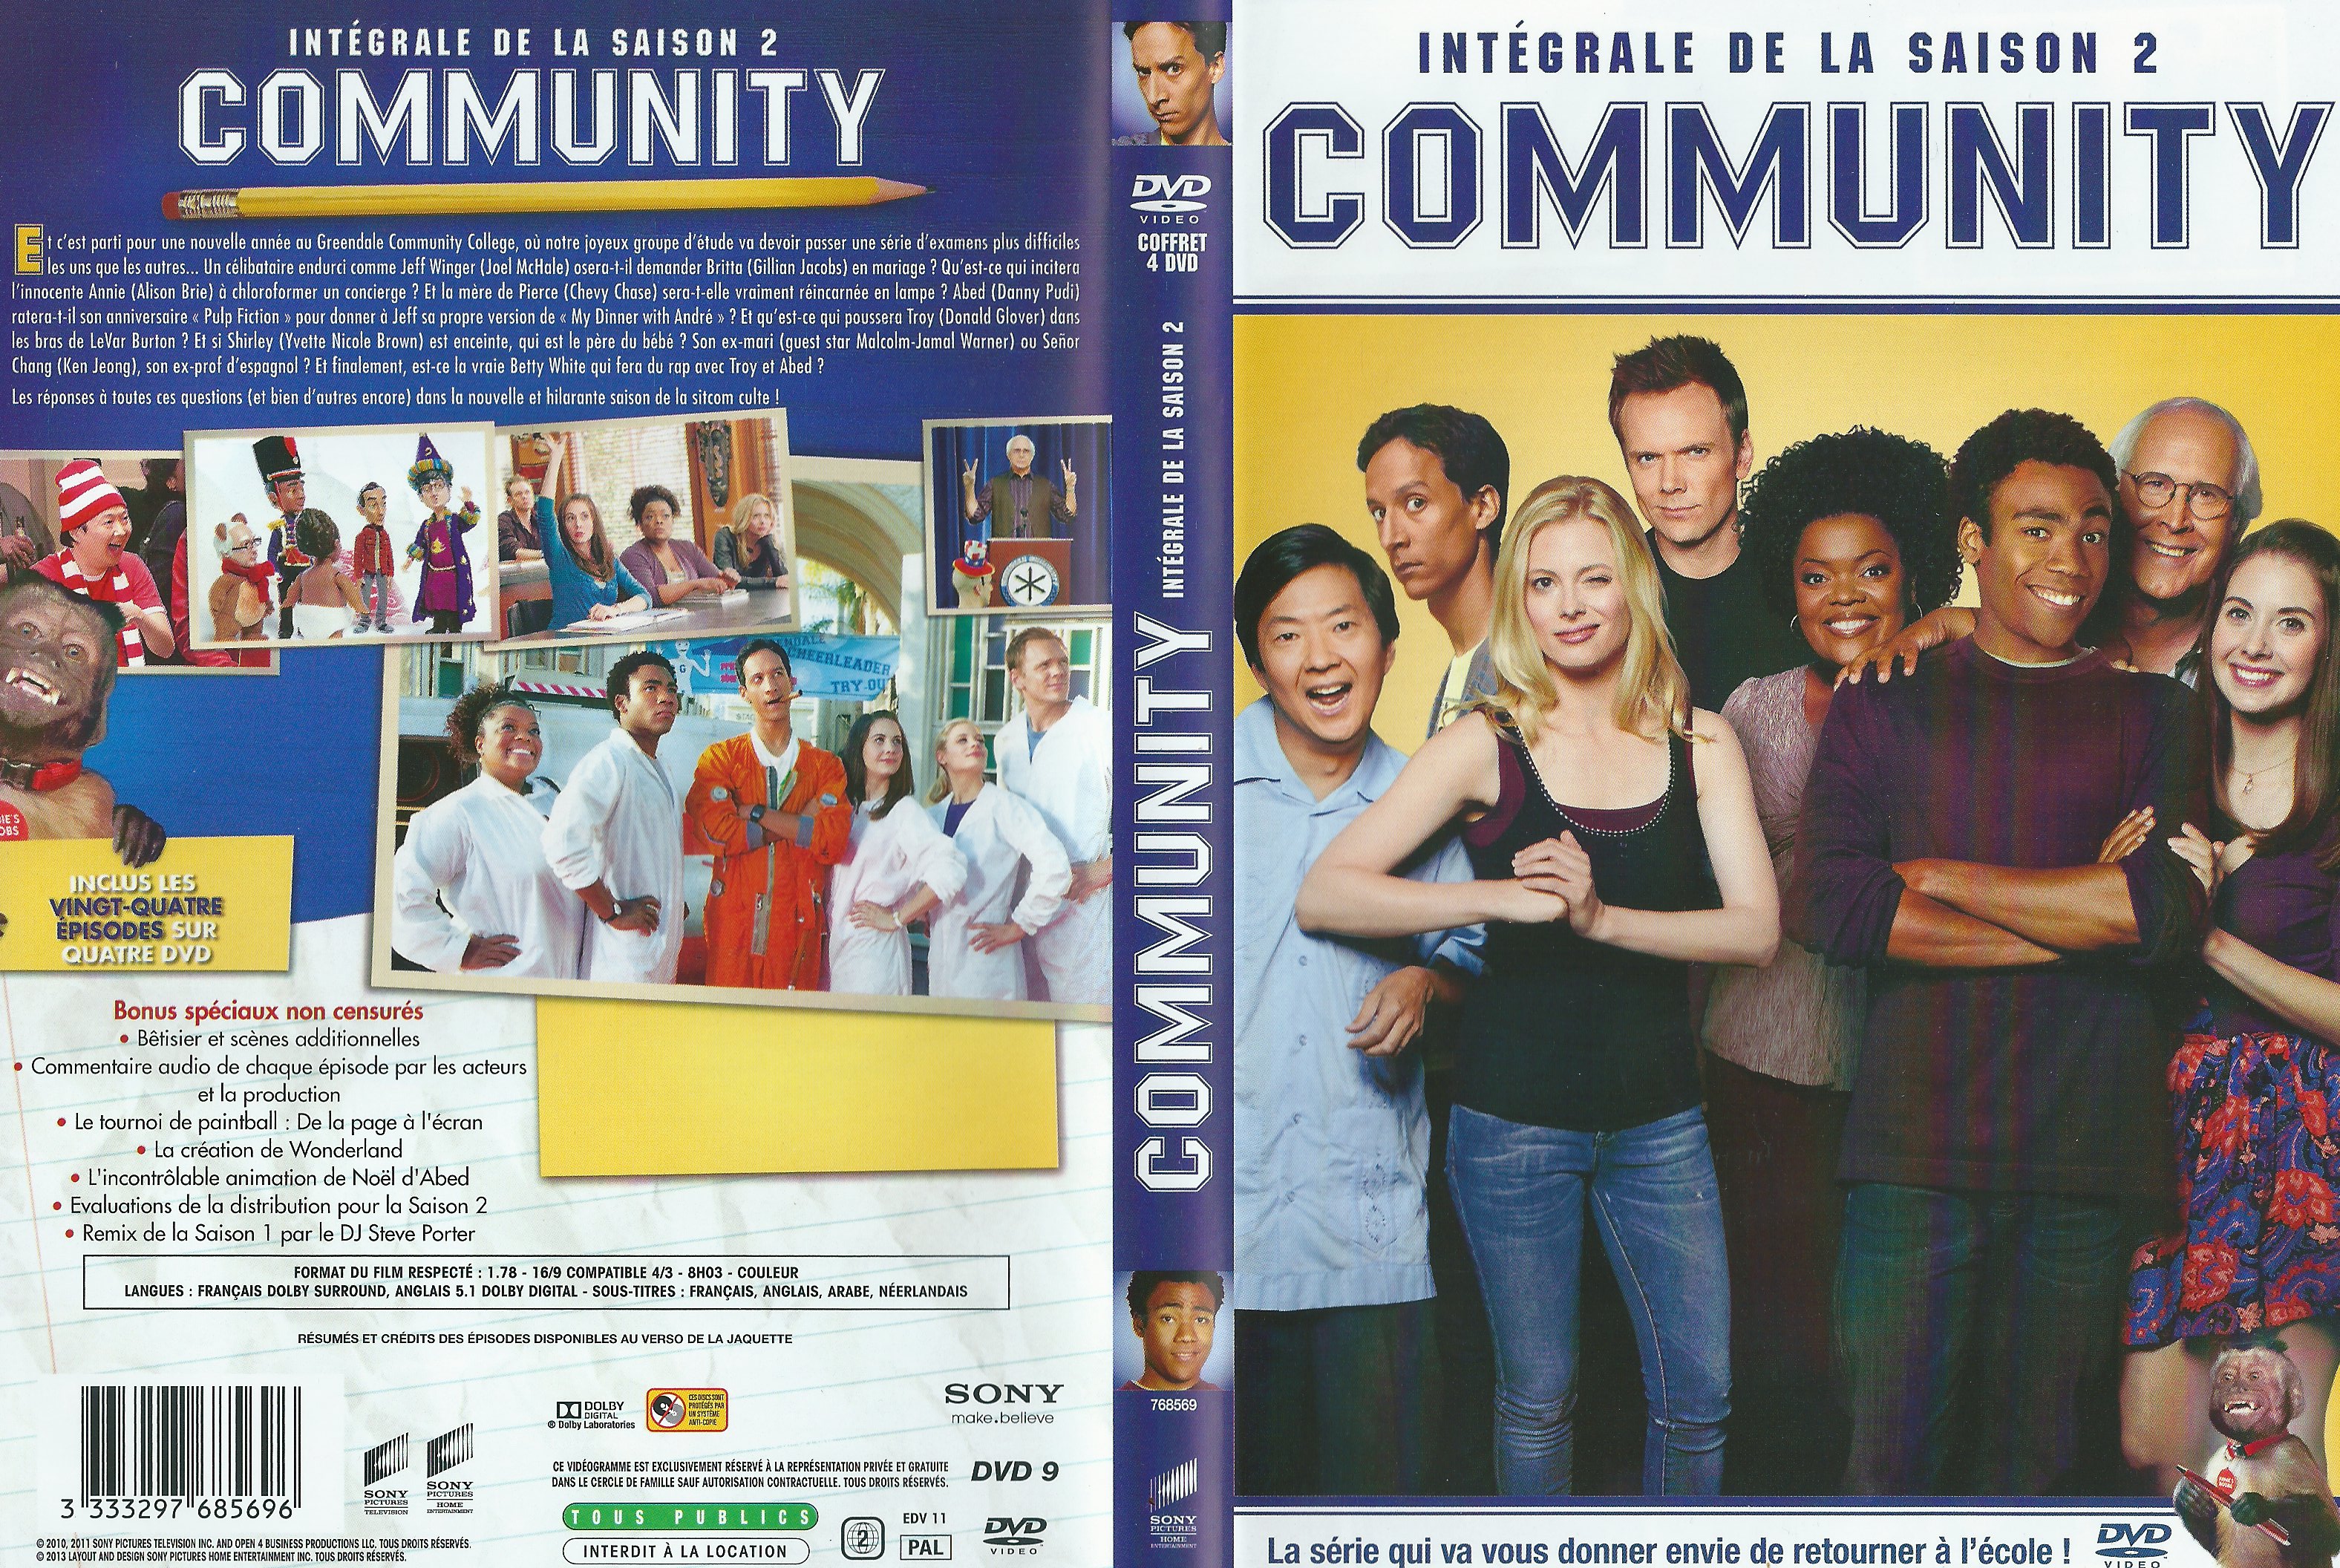 Jaquette DVD Community Saison 2 COFFRET